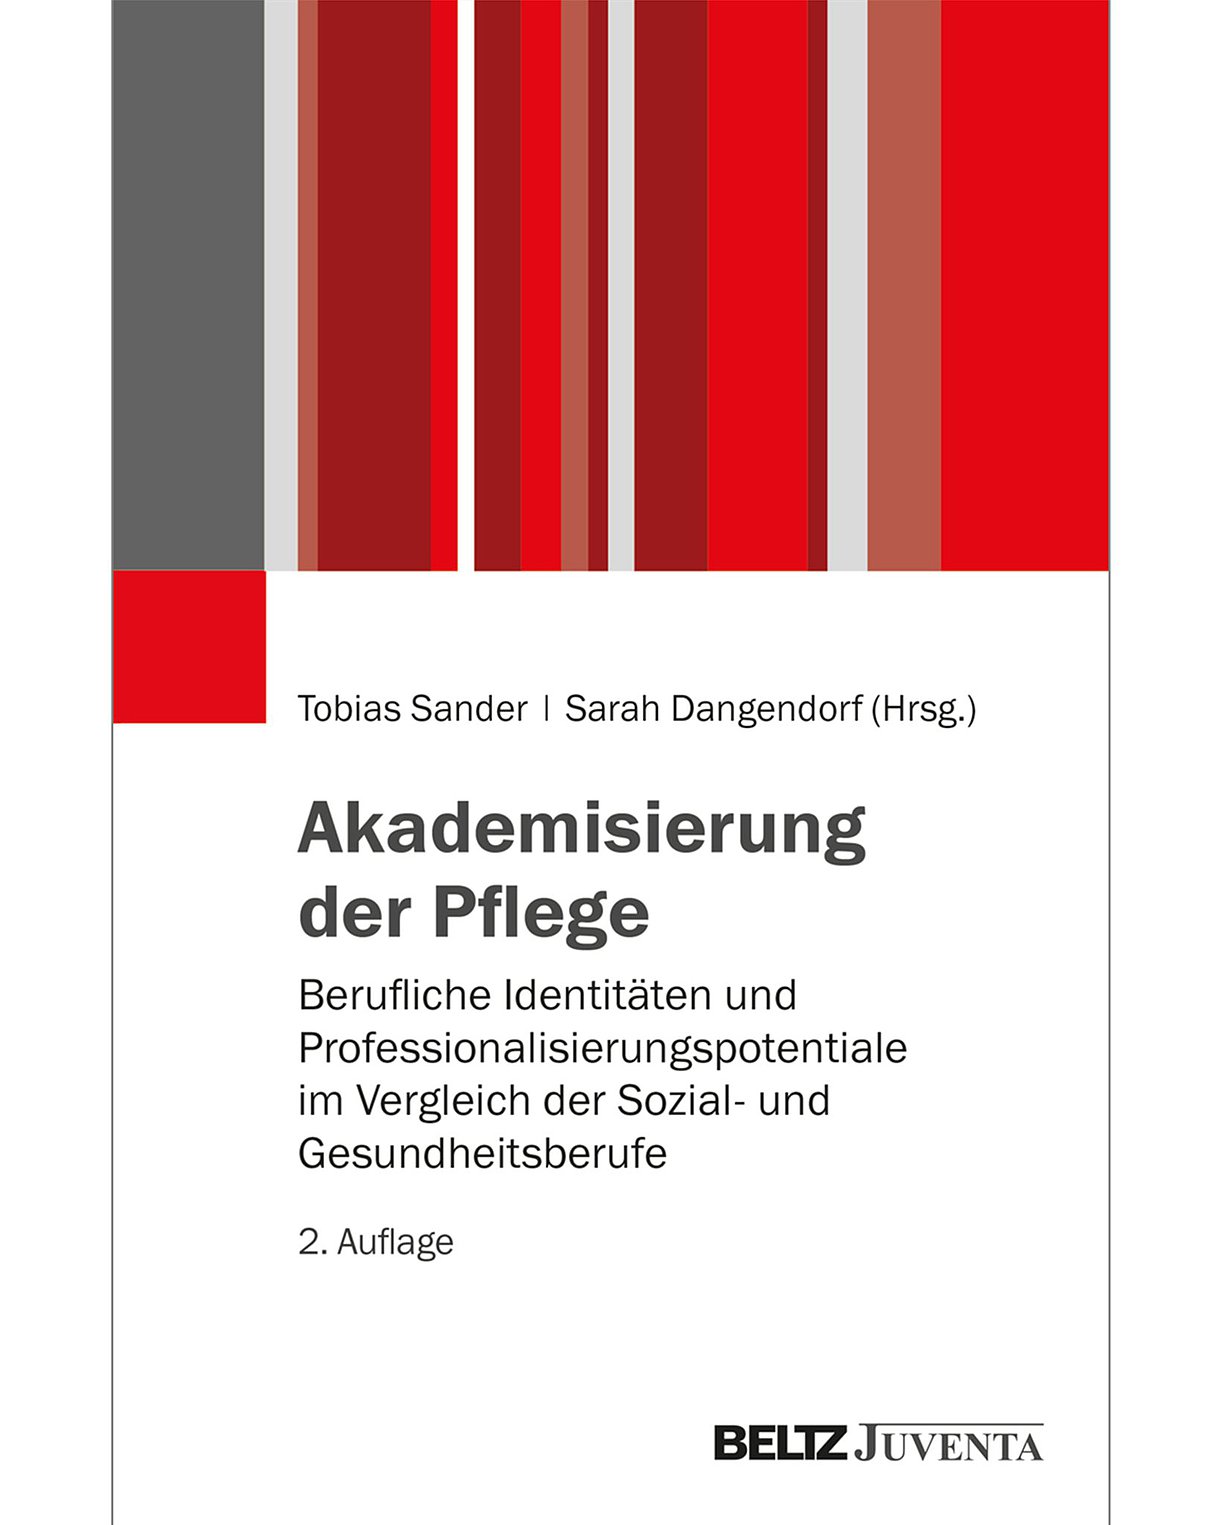 Cover des Buches "Akademisierung der Pflege" mit roten un grauen Balken im oberen Drittel